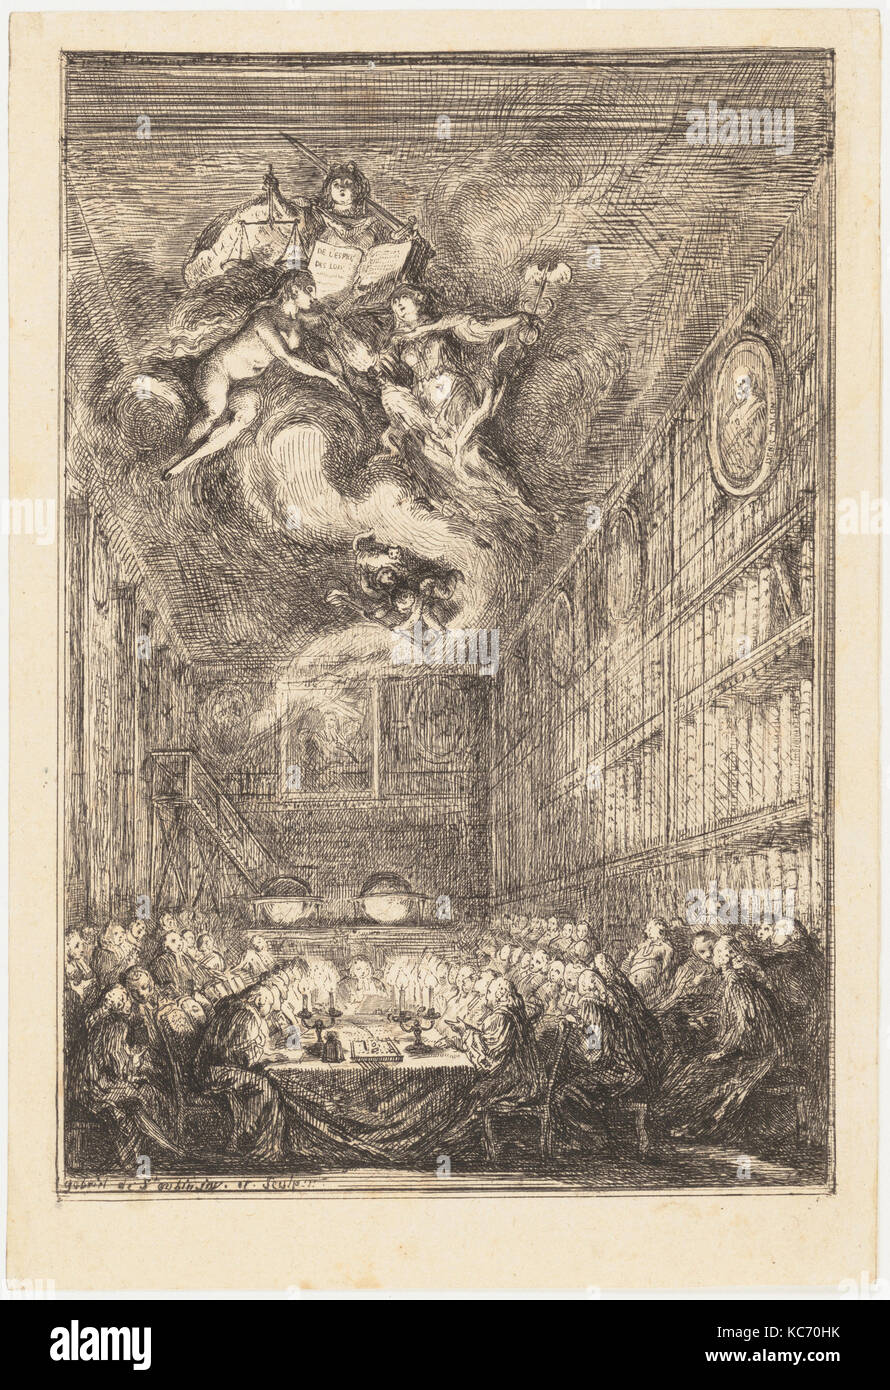 A Conference of Lawyers, Gabriel de Saint-Aubin, 1776 Stock Photo